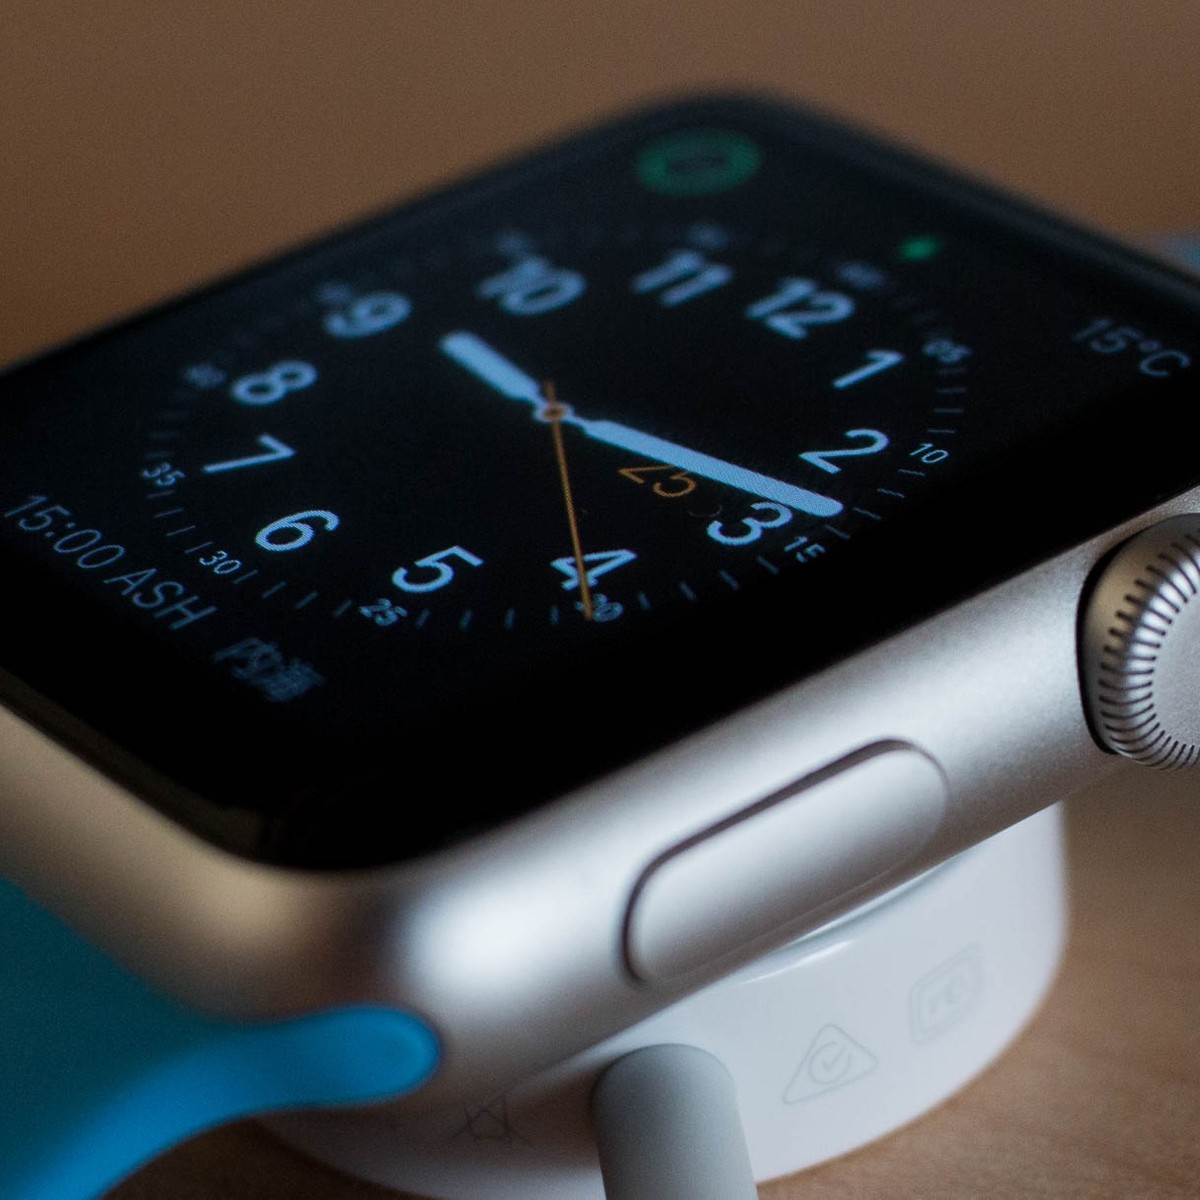 O quão maior seria a tela do Apple Watch Series 7? »